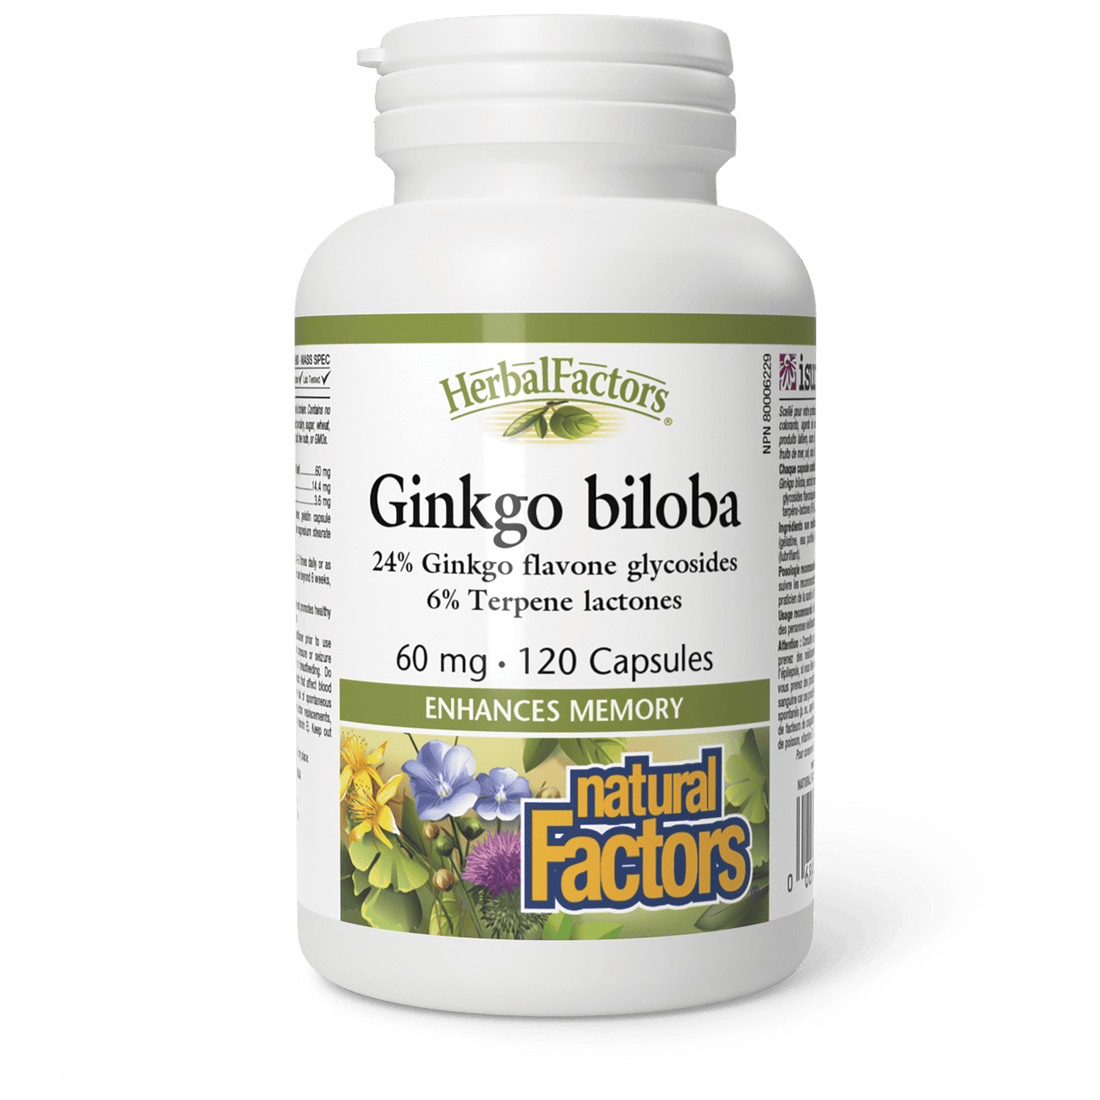 Natural Factors HerbalFactors Ginkgo Biloba 60 mg (120 Capsules)